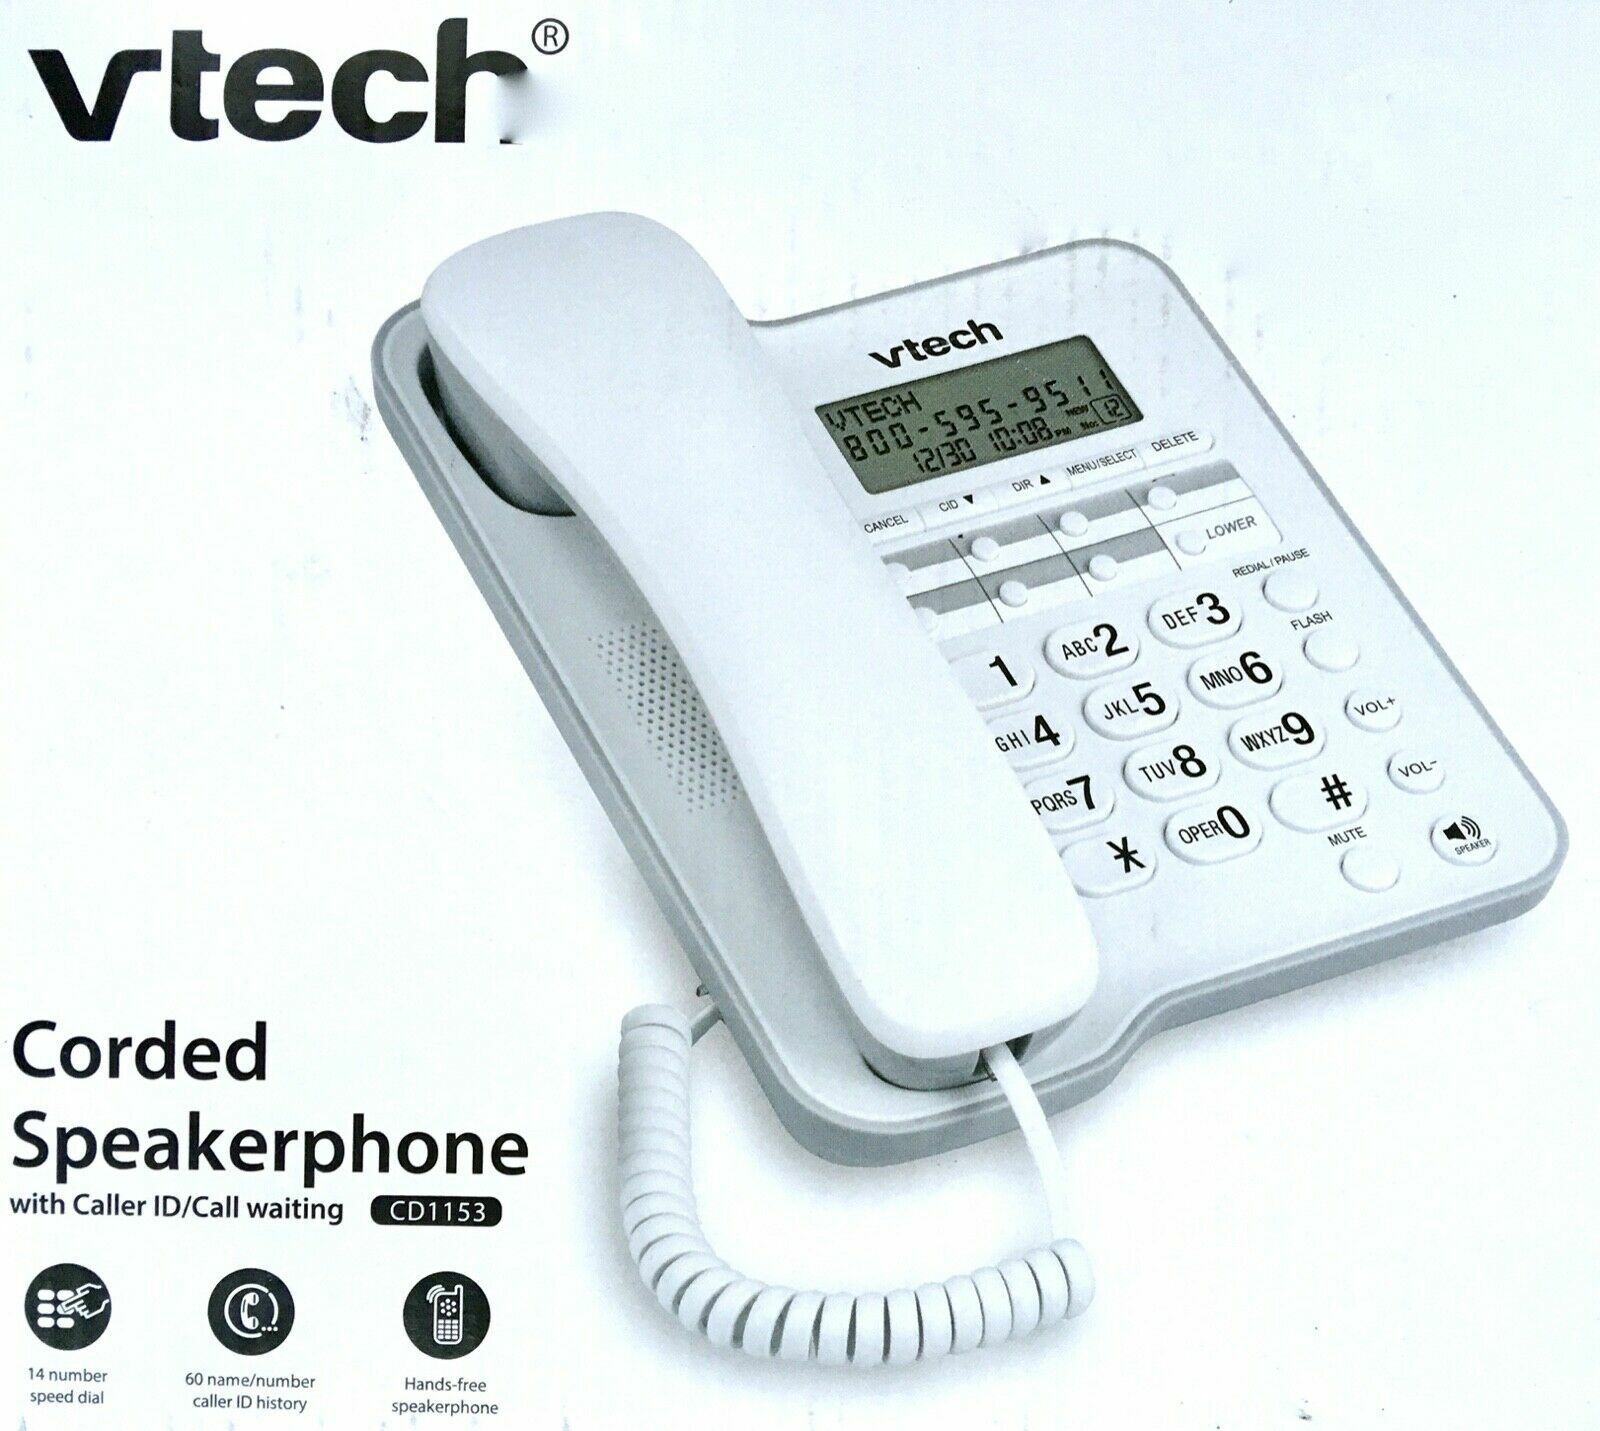 VTech CD1153: Corded Speakerphone w/ Caller ID - White